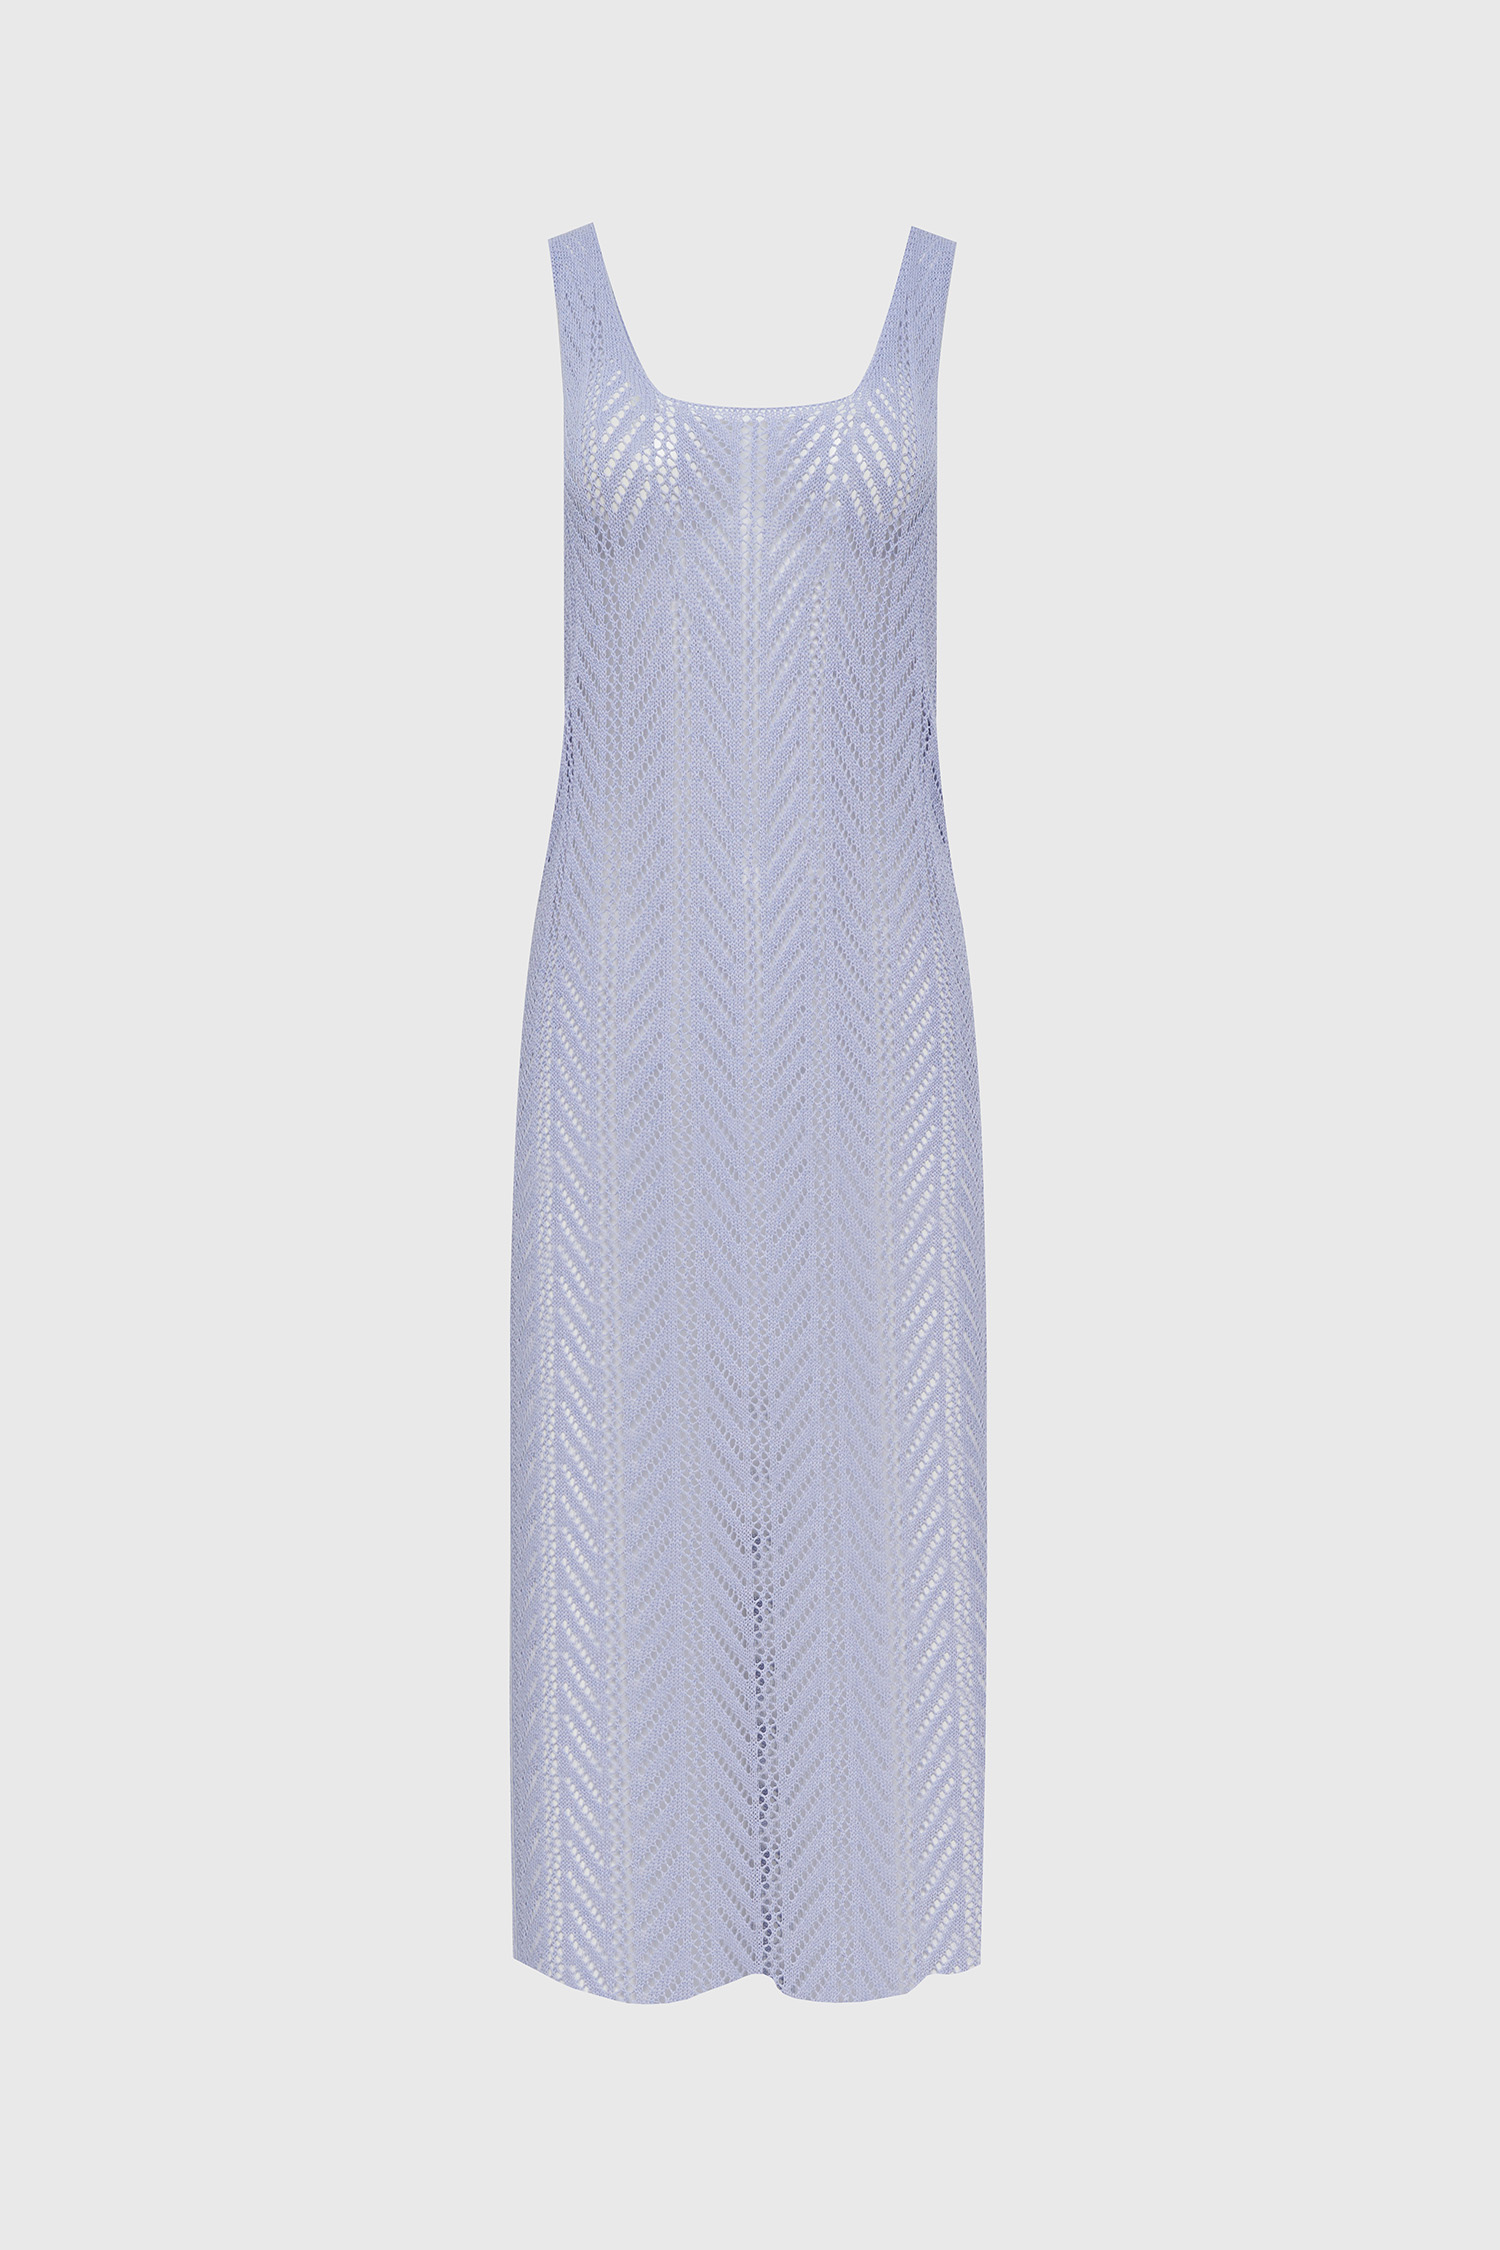 Netting pattern layered slit long dress - coolblue